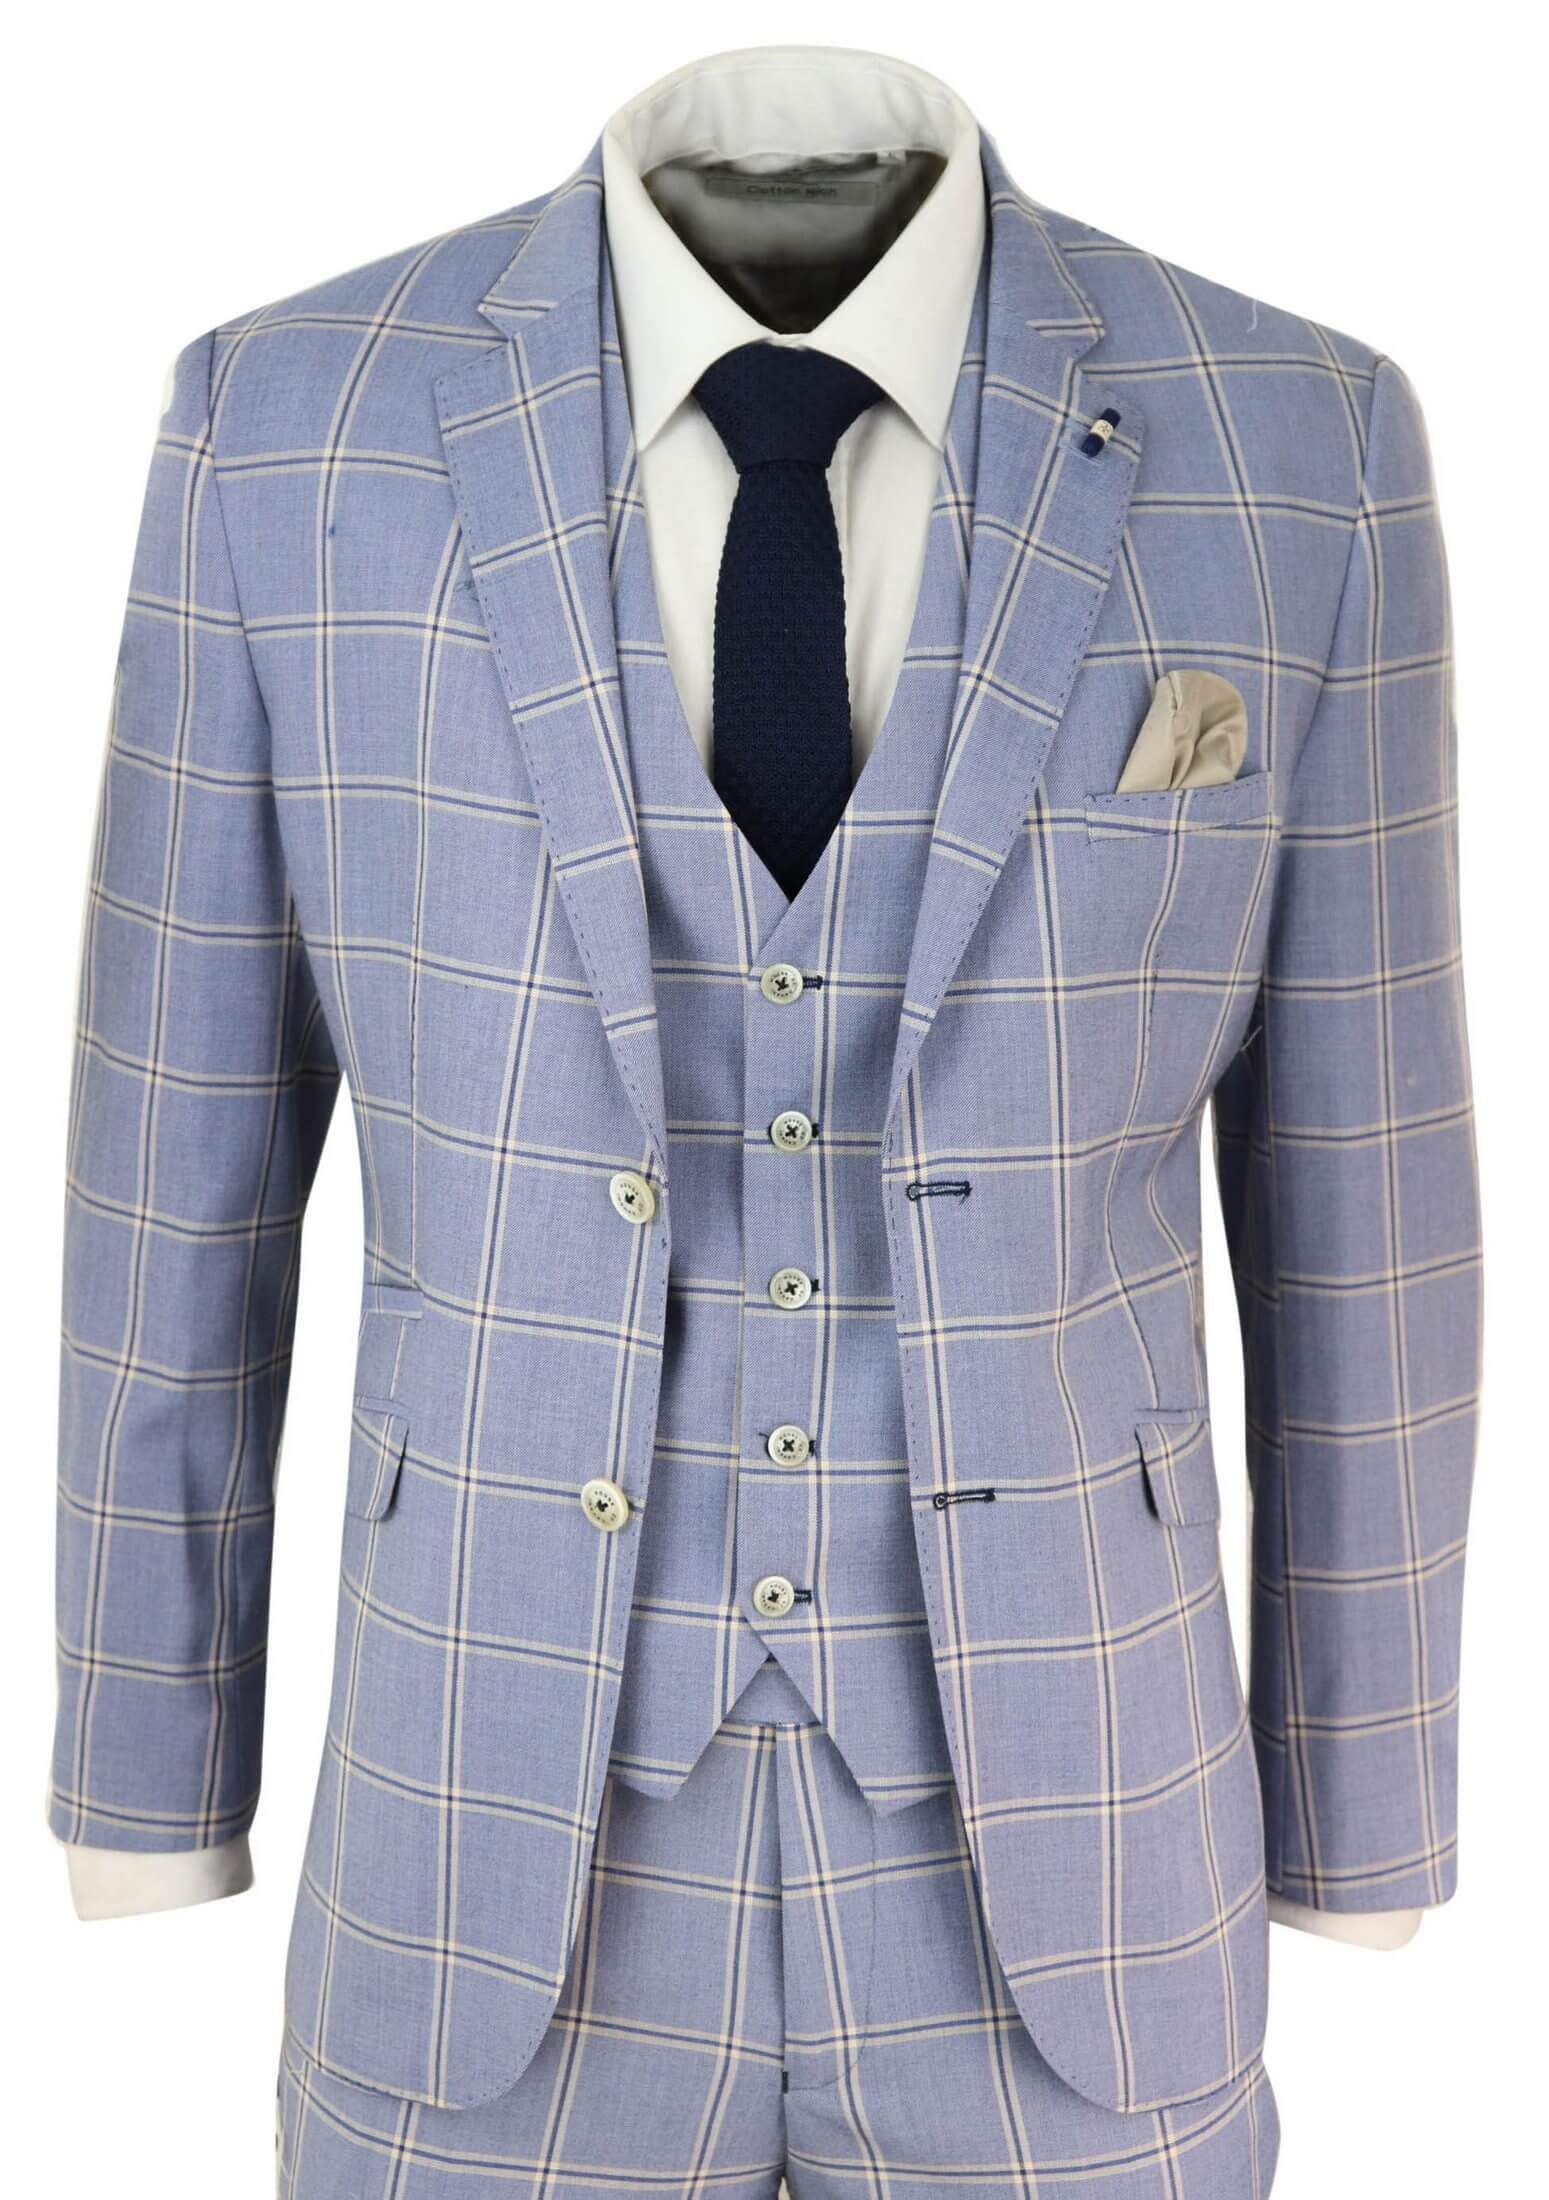 Mens 3 Piece Light Blue Check Suit: Buy Online - Happy Gentleman